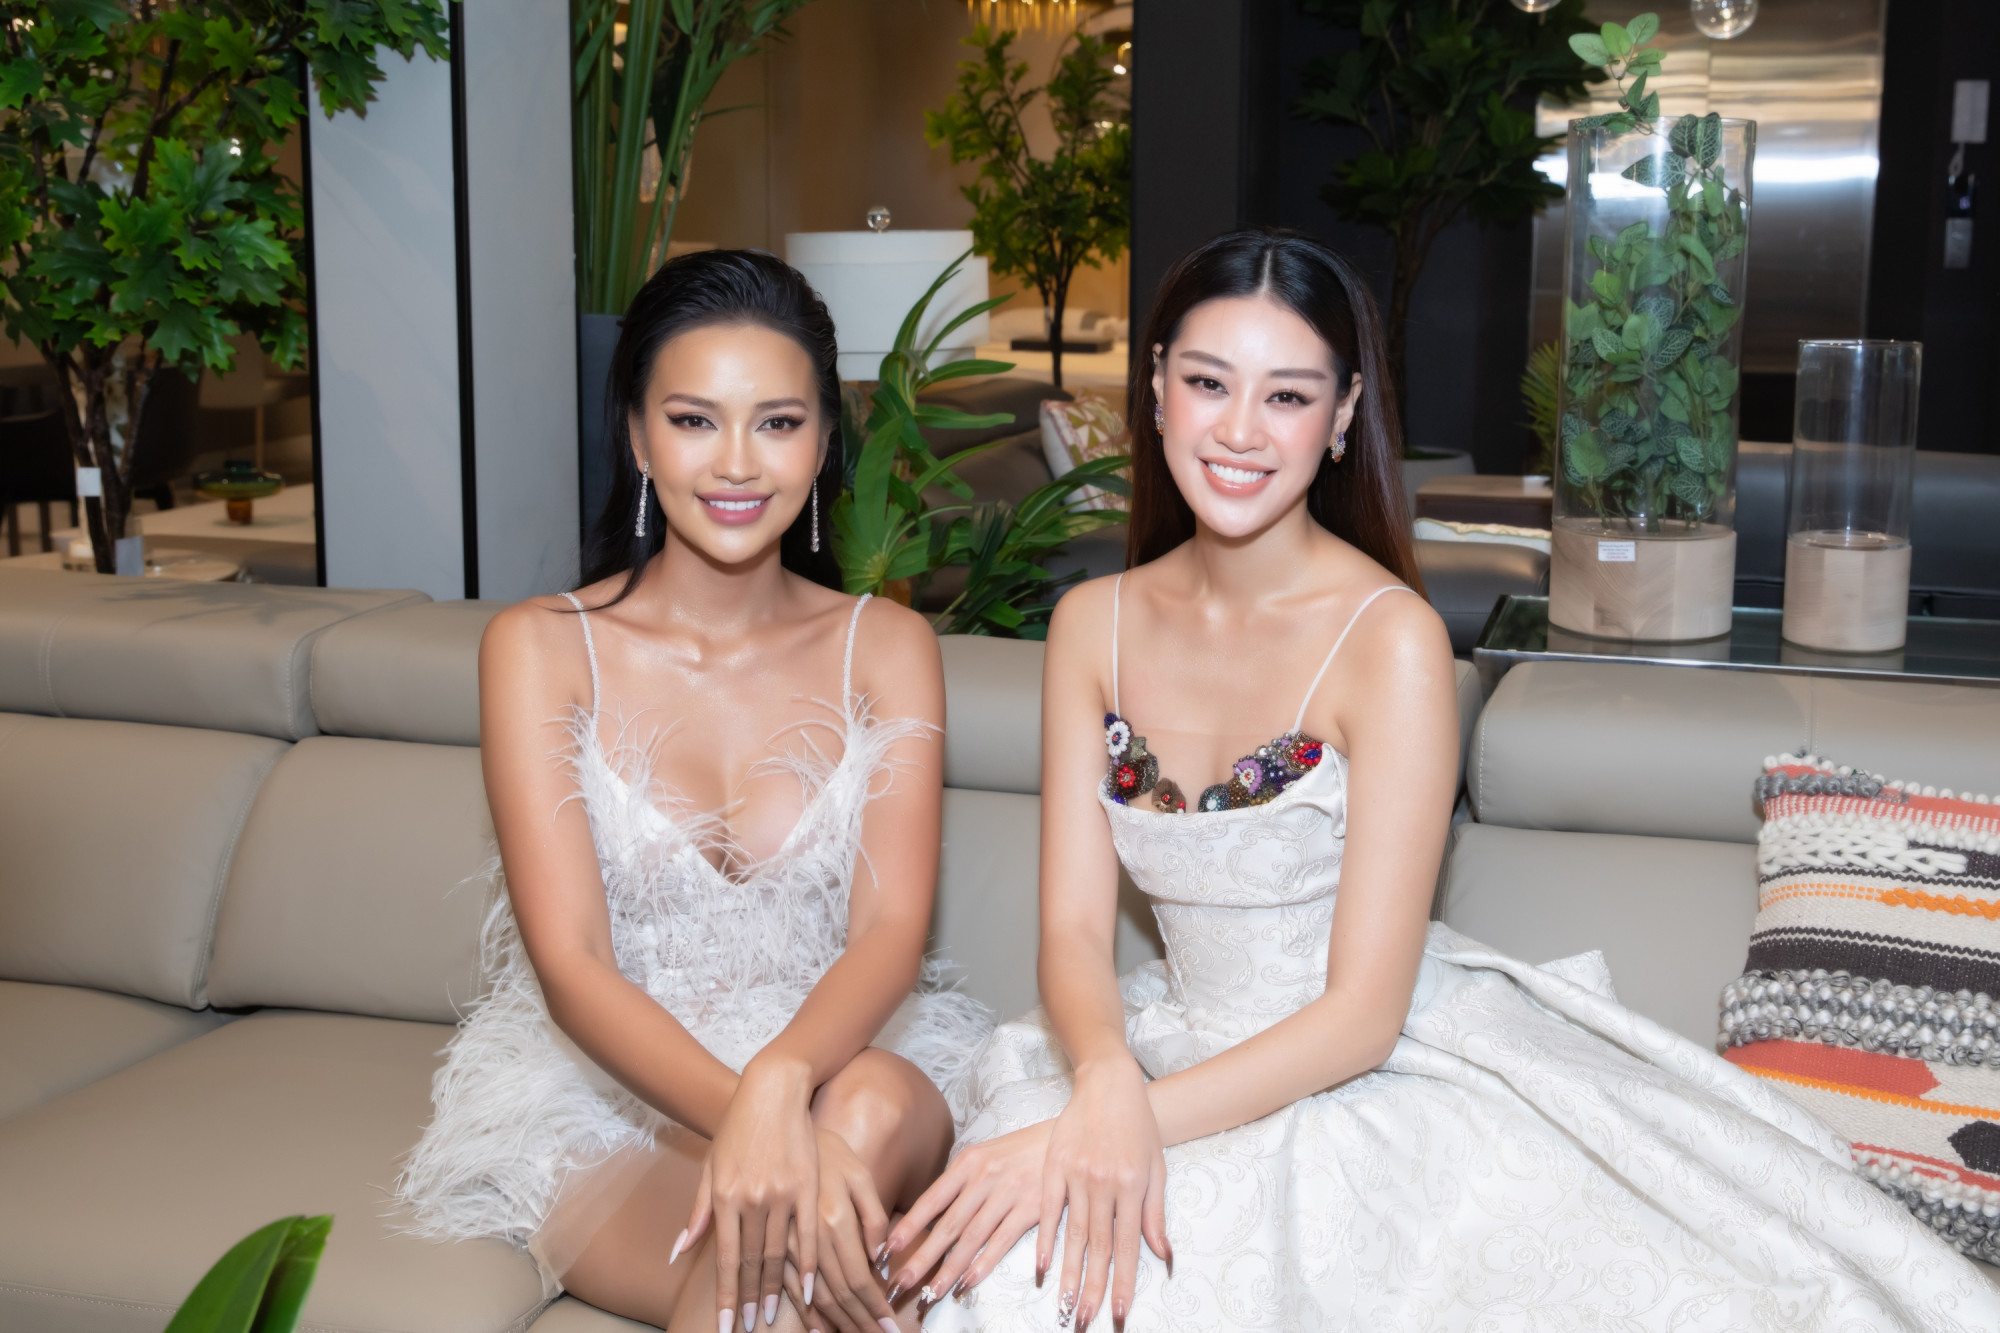 Không hẹn mà gặp, hai nàng hậu Ngọc Châu và Khánh Vân cùng chọn trong màu trắng khi đến tham dự sự kiện khai trương của doanh nhân Dương Quốc Nam. Cả hai vô cùng thân thiết sau khoảng thời gian đồng hành, hỗ trợ nhau trong cuộc thi Hoa hậu Hoàn vũ Việt Nam 2022.